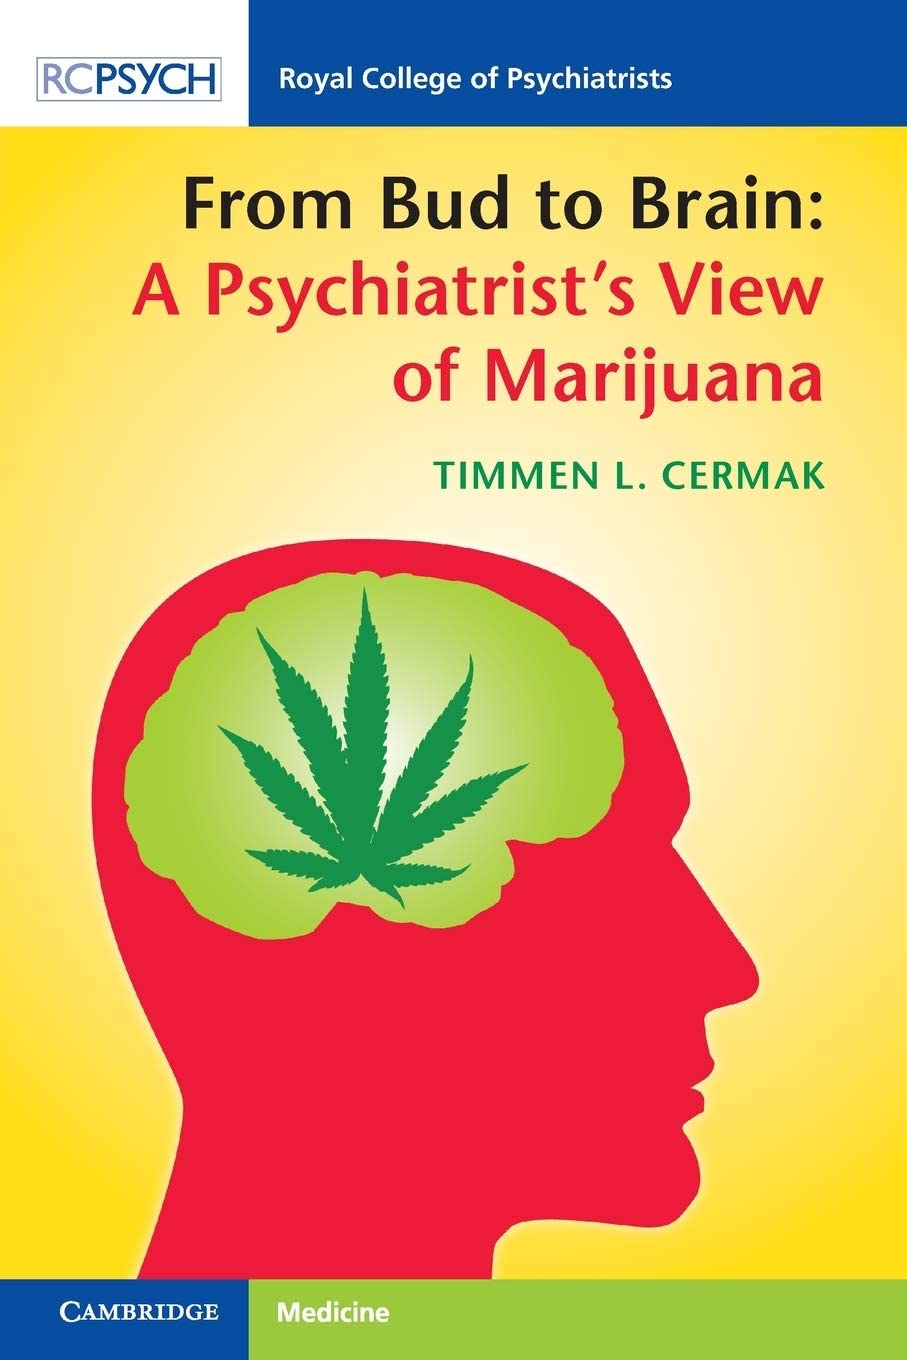 From Bud to Brain: A Psychiatrist's View of Marijuana